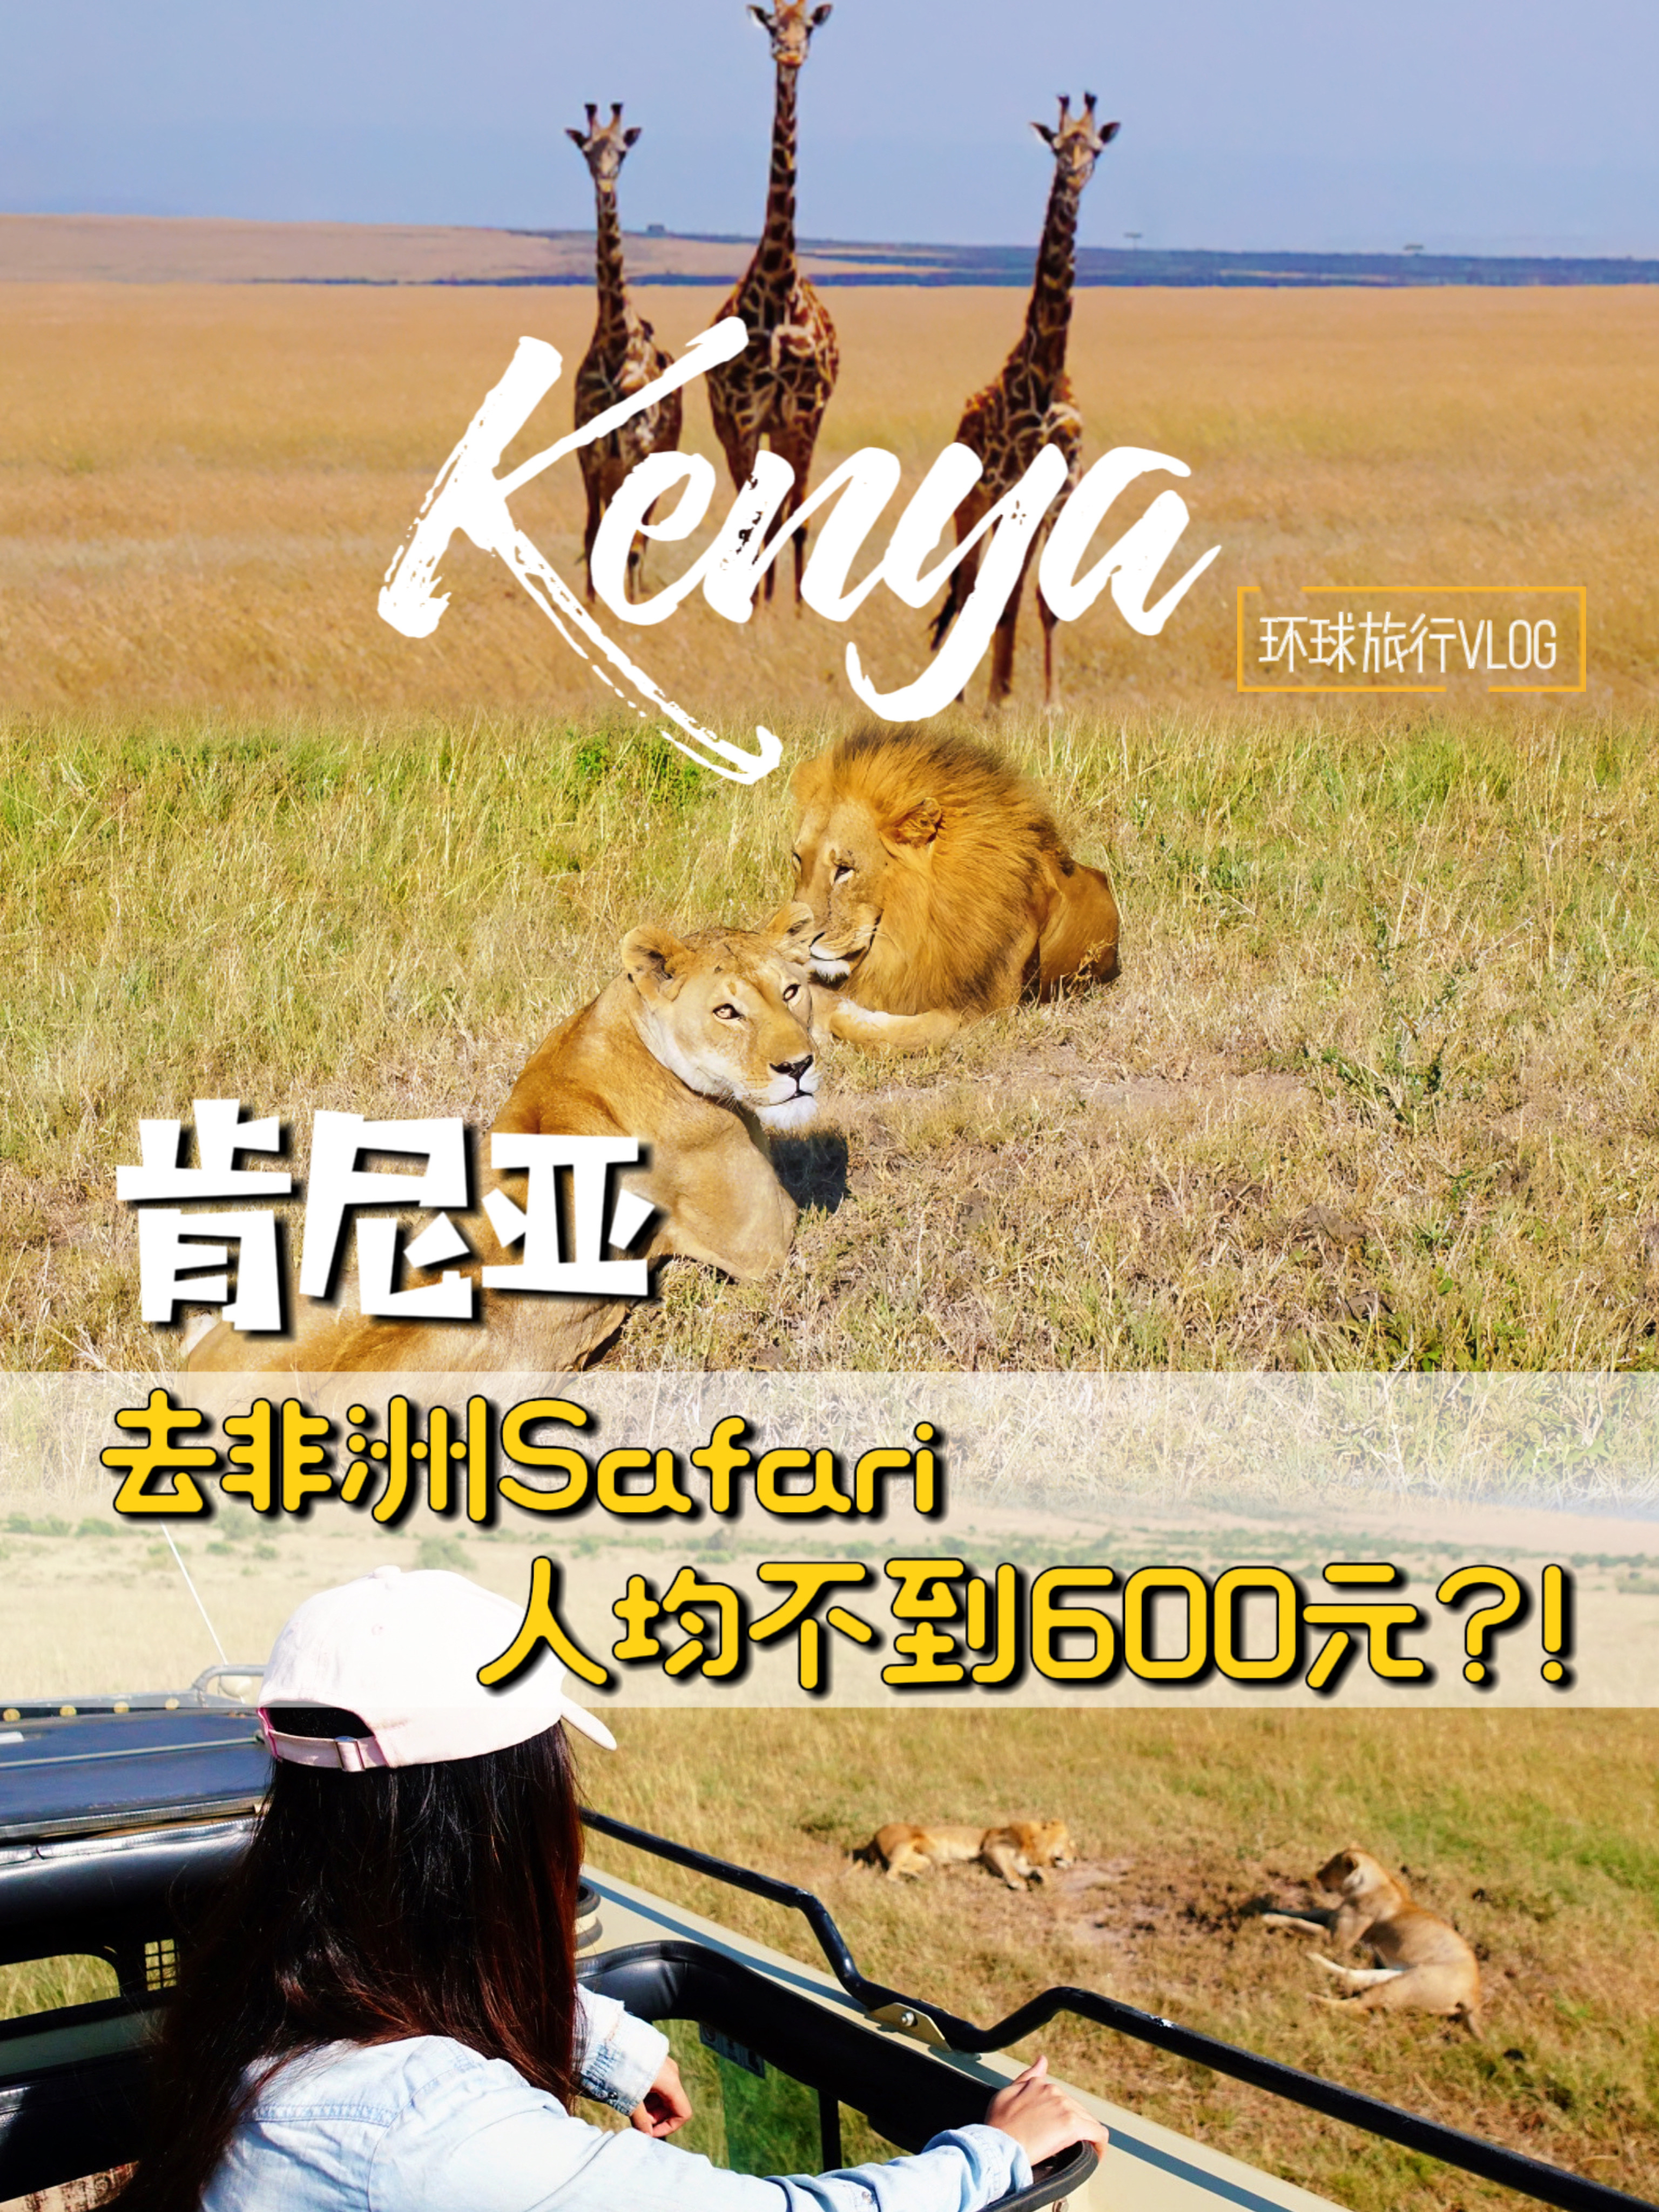 肯尼亚｜环球旅行去非洲safari，人均不到600元？